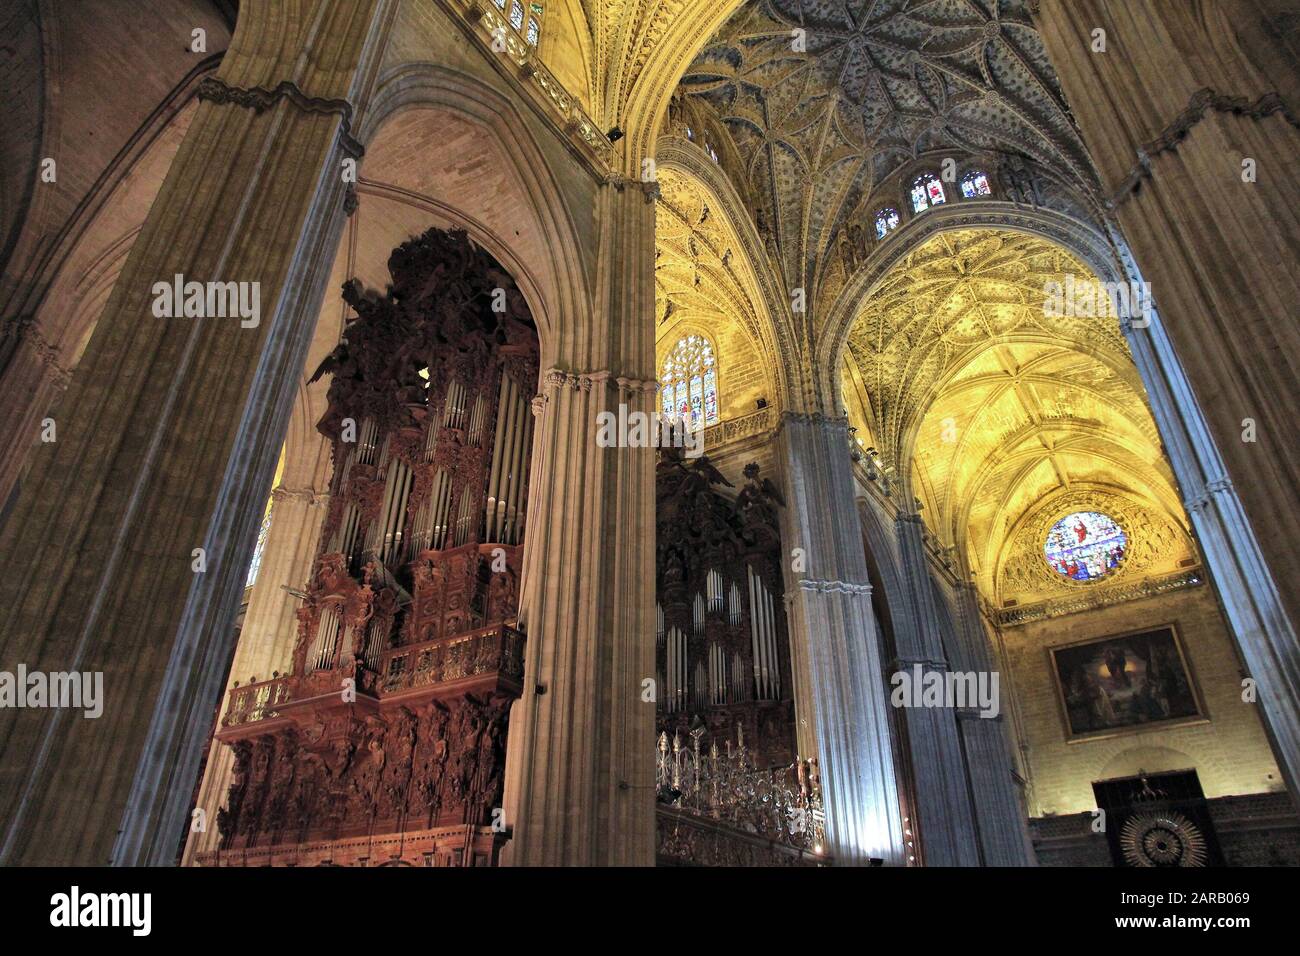 Sevilla, Spanien - 5 November, 2012: Innenansicht der Kathedrale von Sevilla in Spanien. Die gotische Kirche wurde 1507 geweiht und ist ein UNESCO-Herita Stockfoto